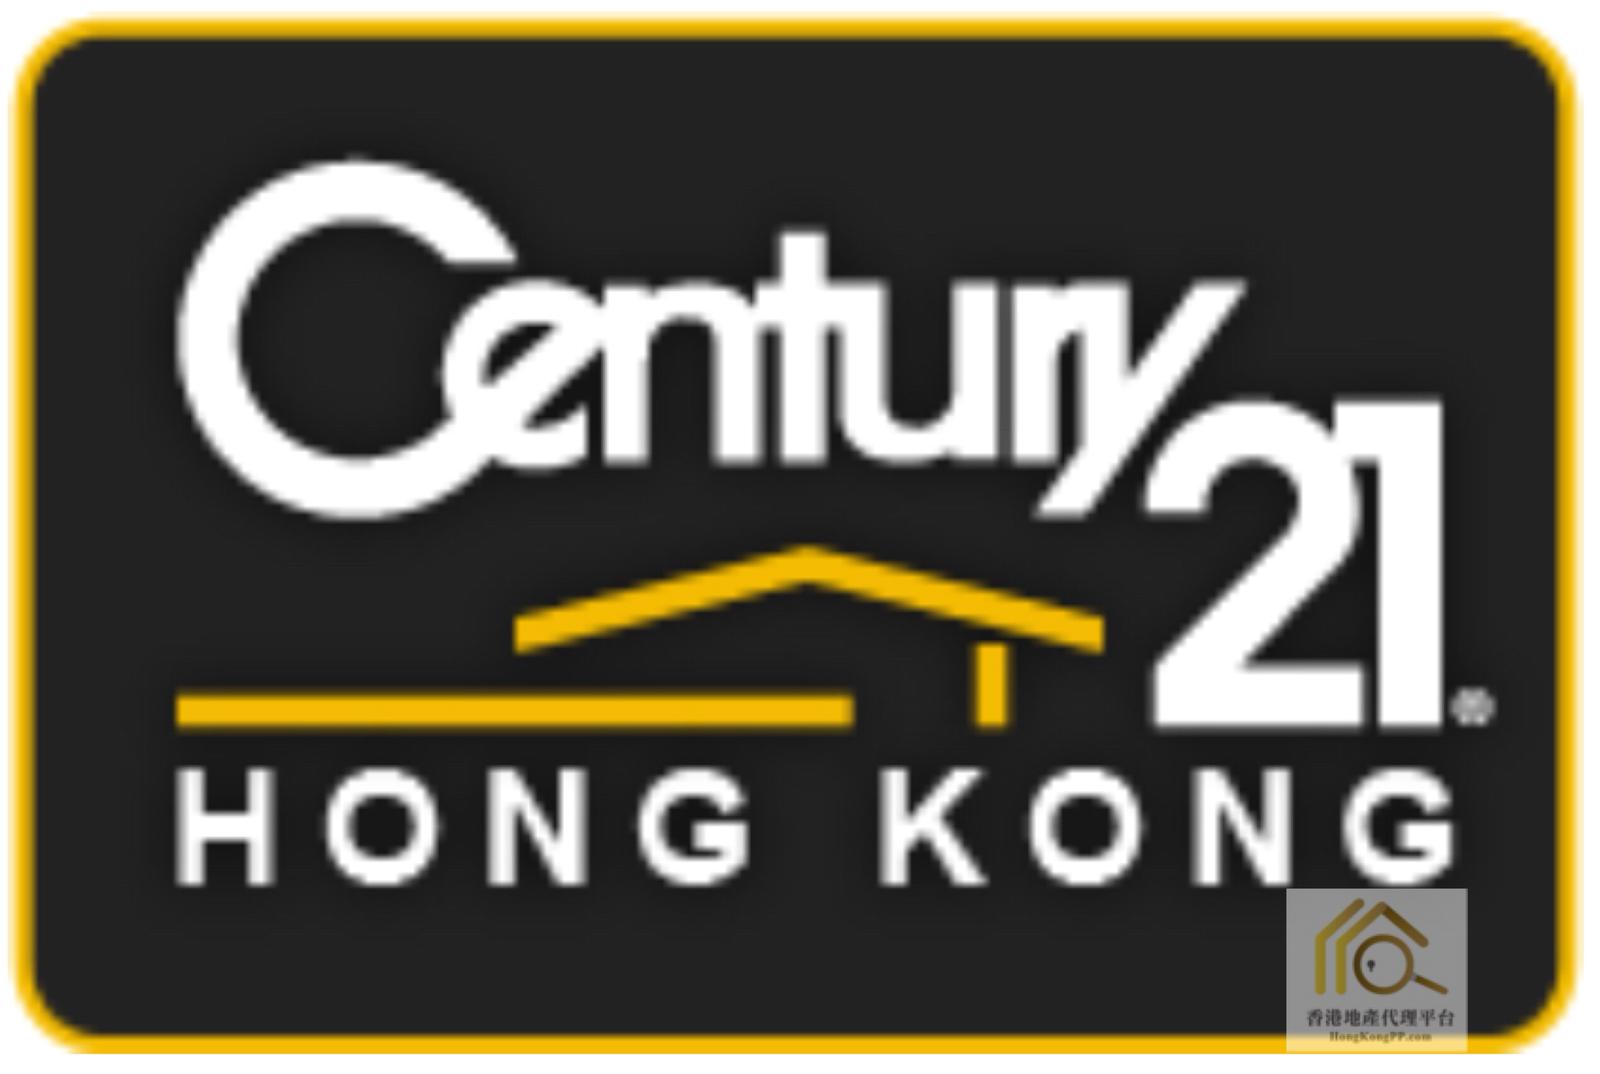 地產代理公司:  世紀21世紀21中華物業有限公司 (柯士甸九龍站分行)